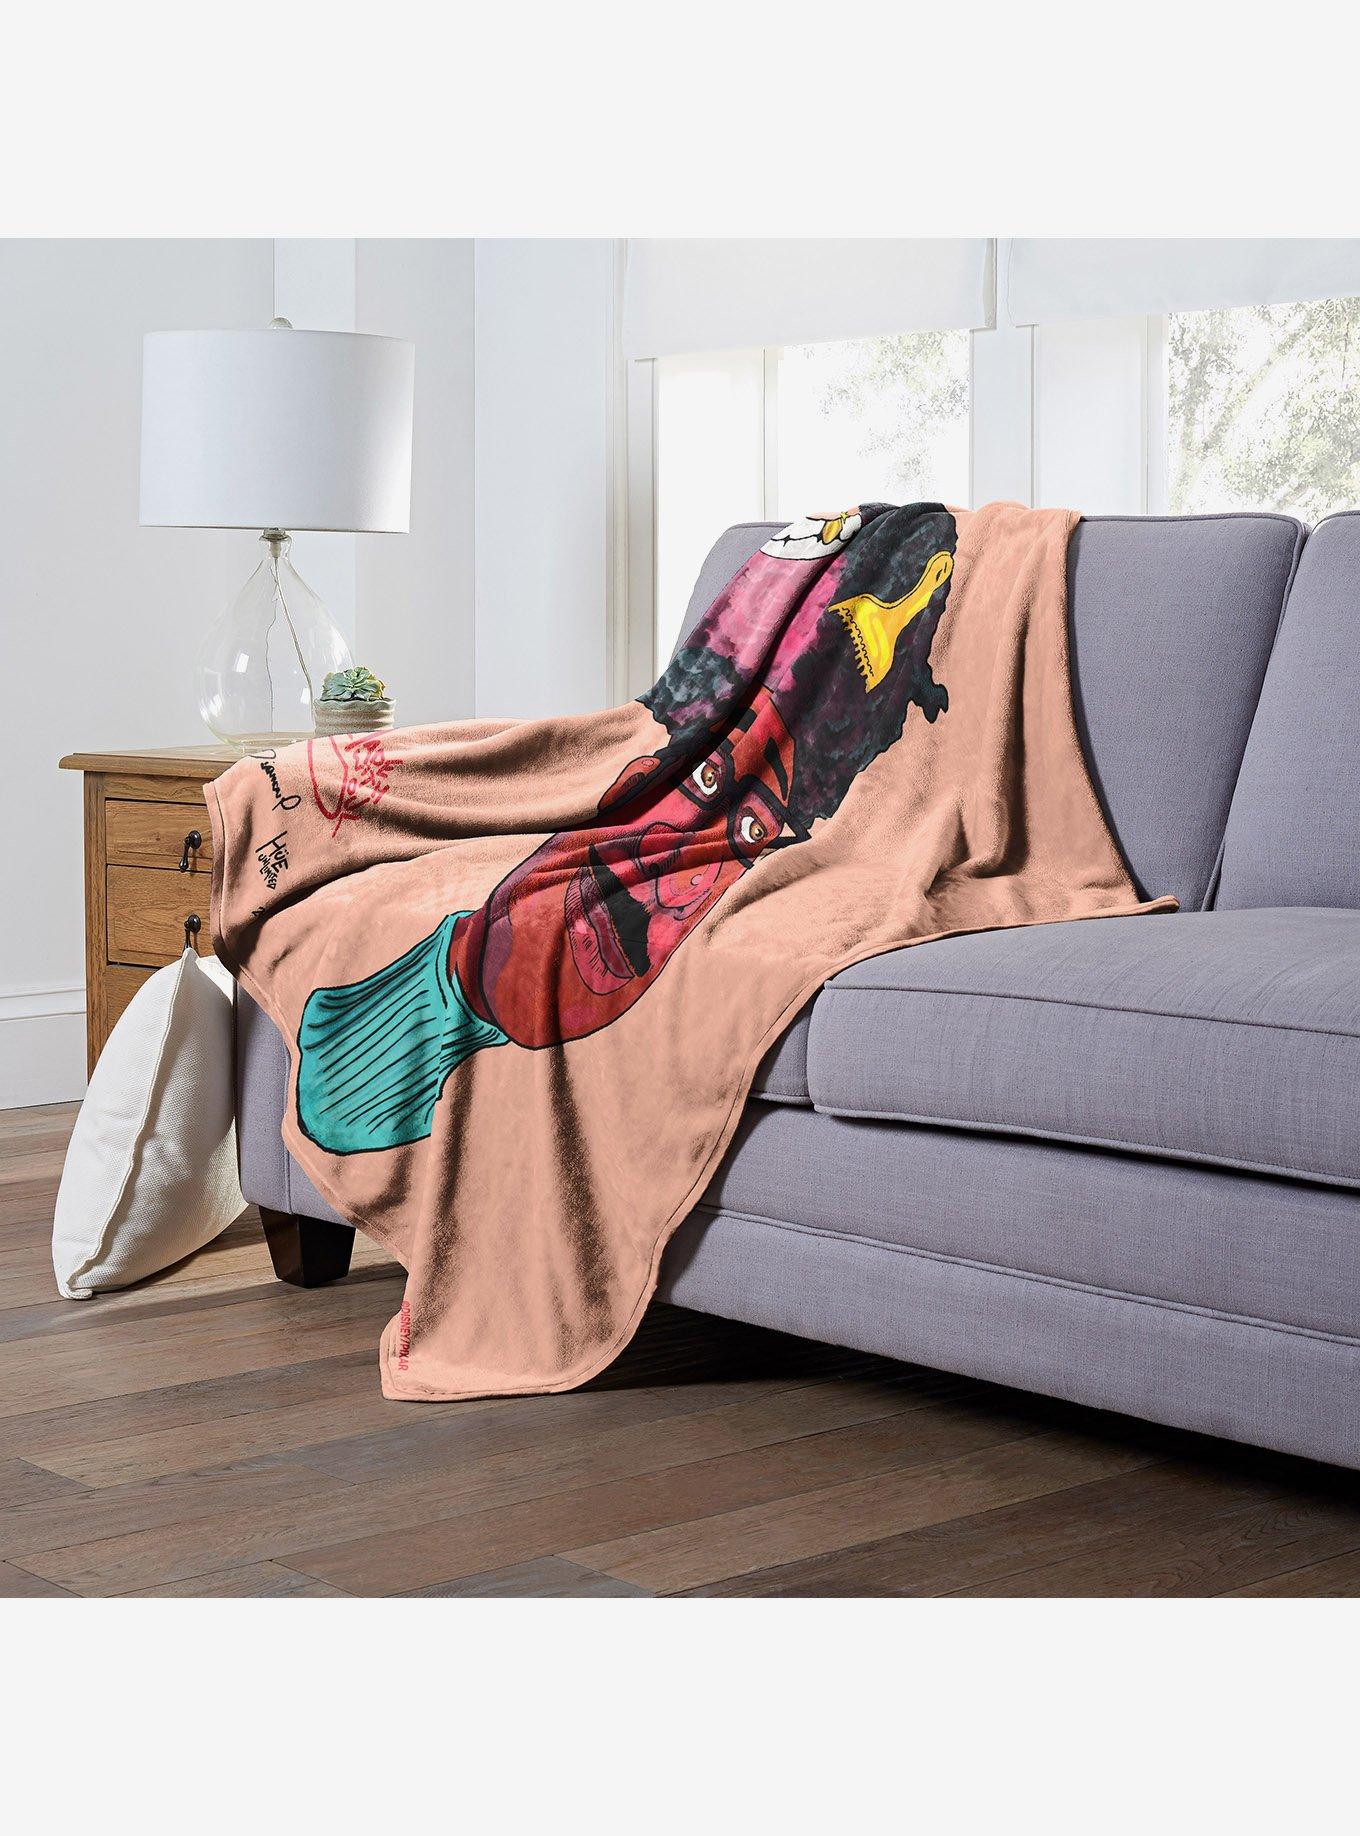 Disney Pixar Soul Joe & His Fro Throw Blanket, , alternate